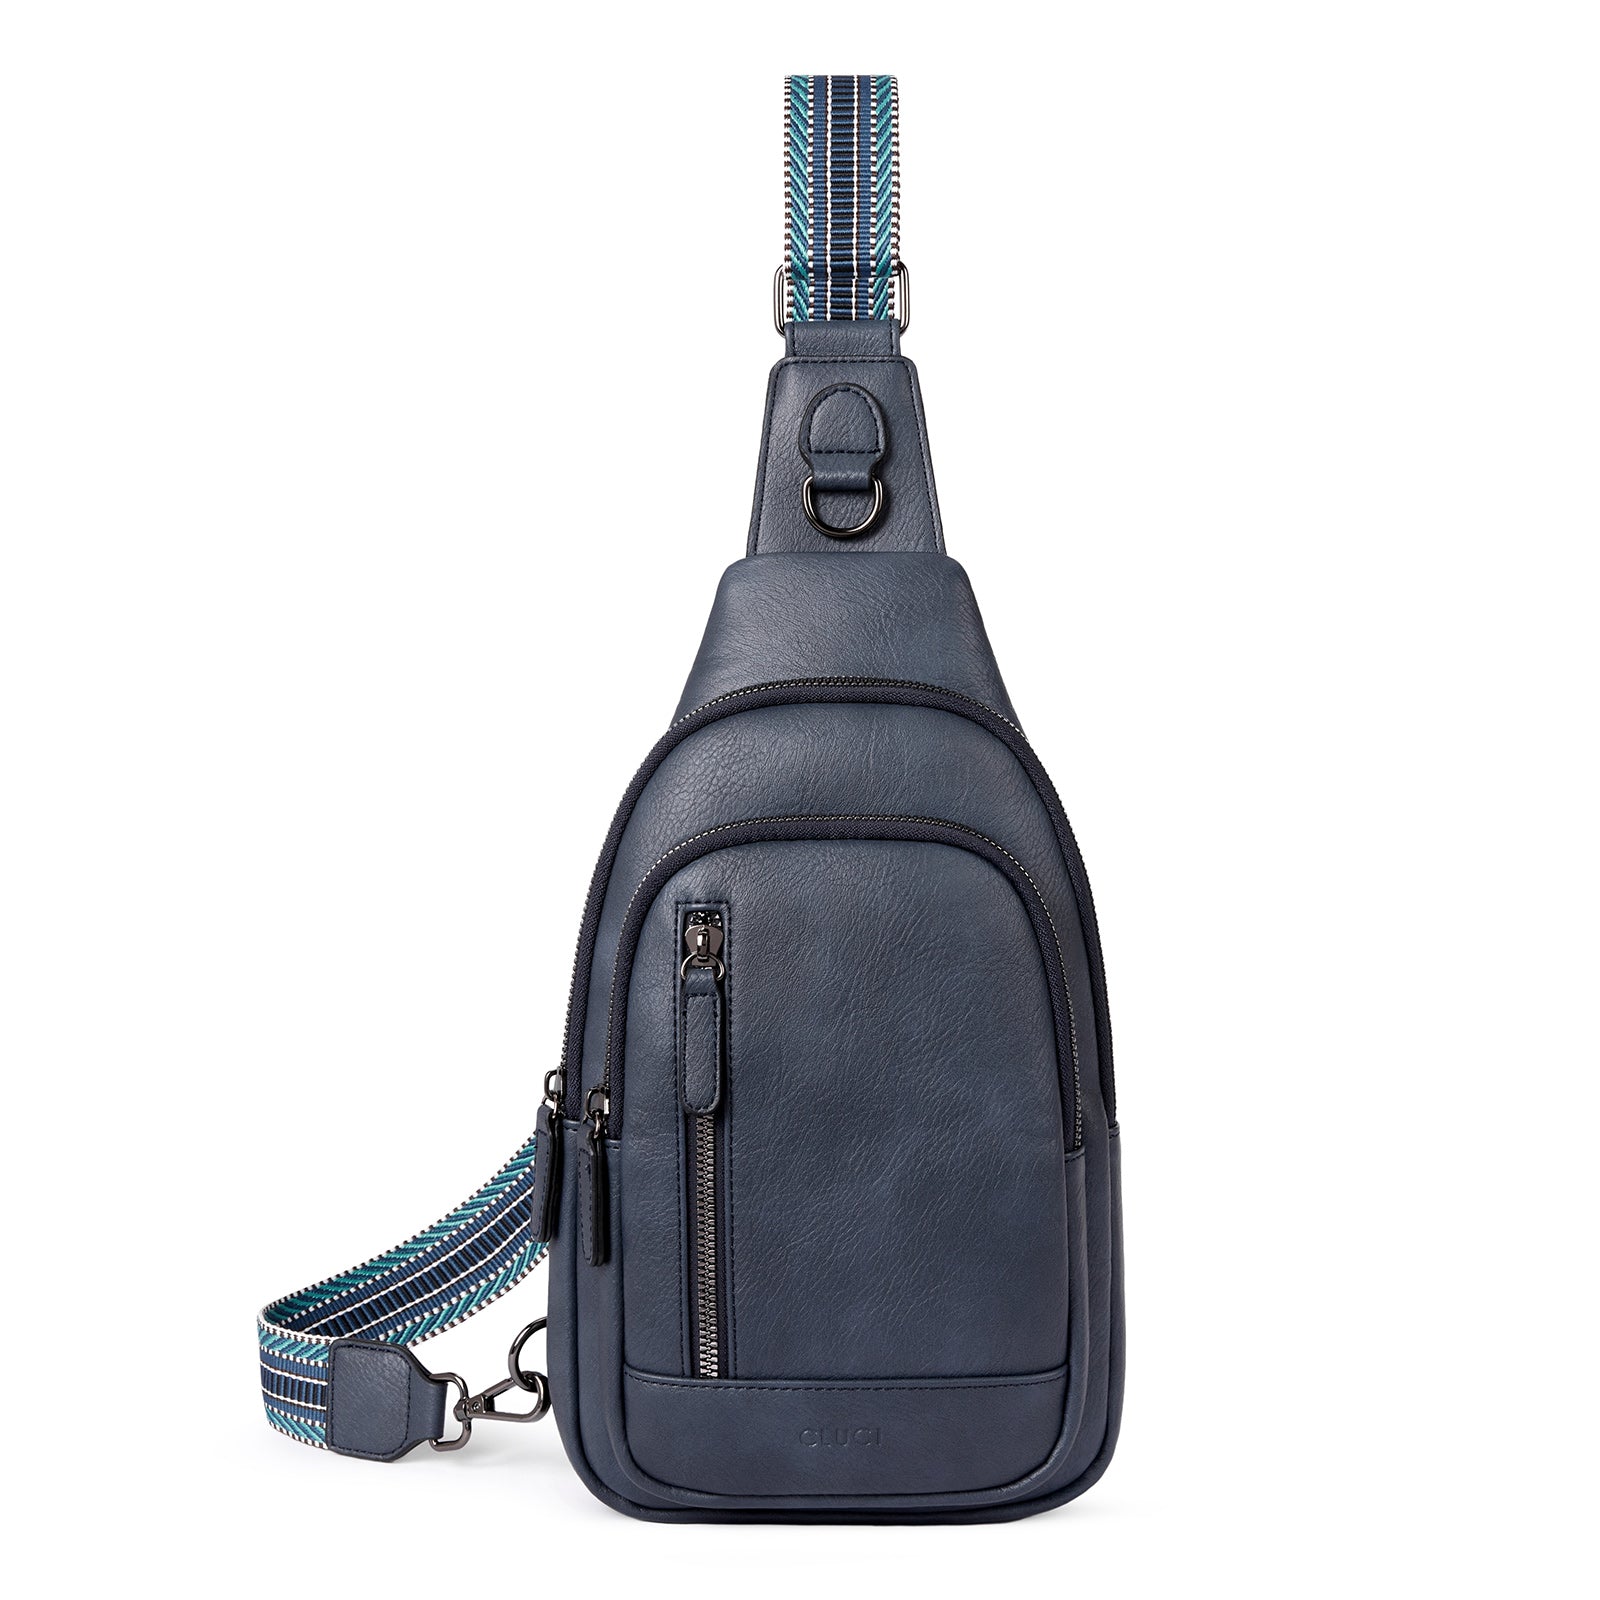 Leather Sling Bag for Men Chest Shoulder Crossbody Hiking Backpack Daypack  Gifts | eBay